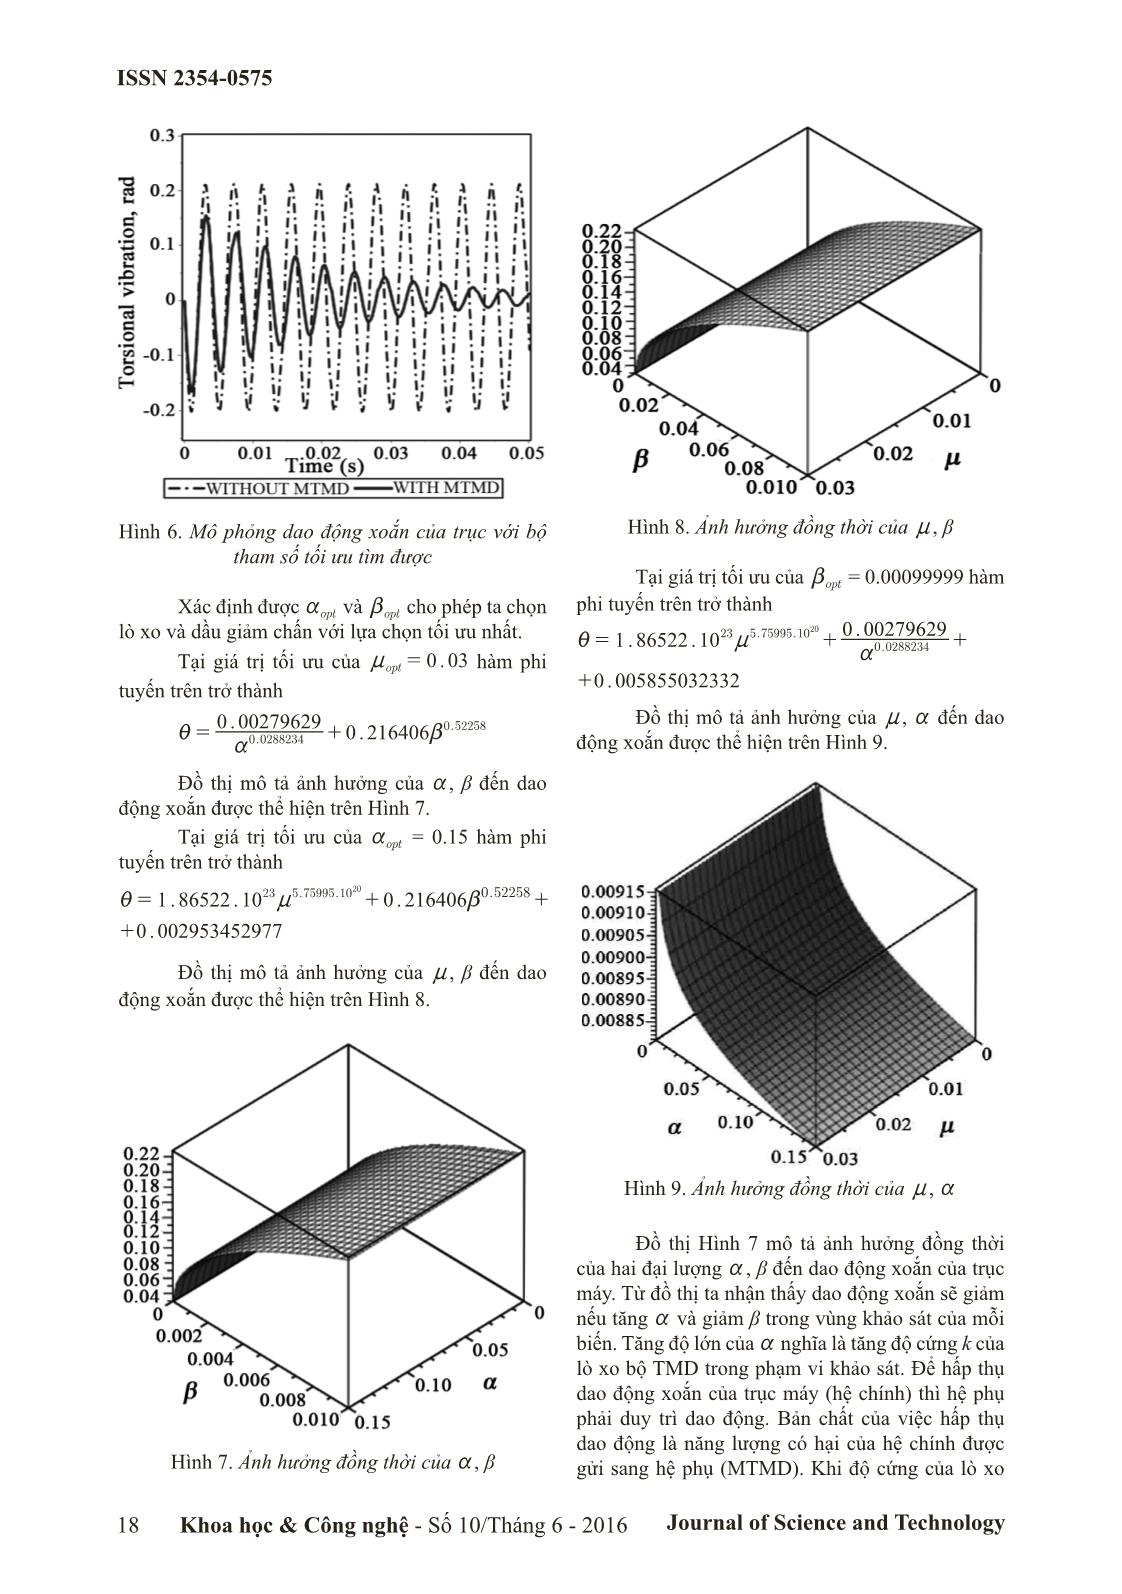 Tối ưu hóa thiết kế bộ MTMD giảm dao động xoắn cho trục ứng dụng thuật toán hồi quy phi tuyến Gauss-Newton trang 5